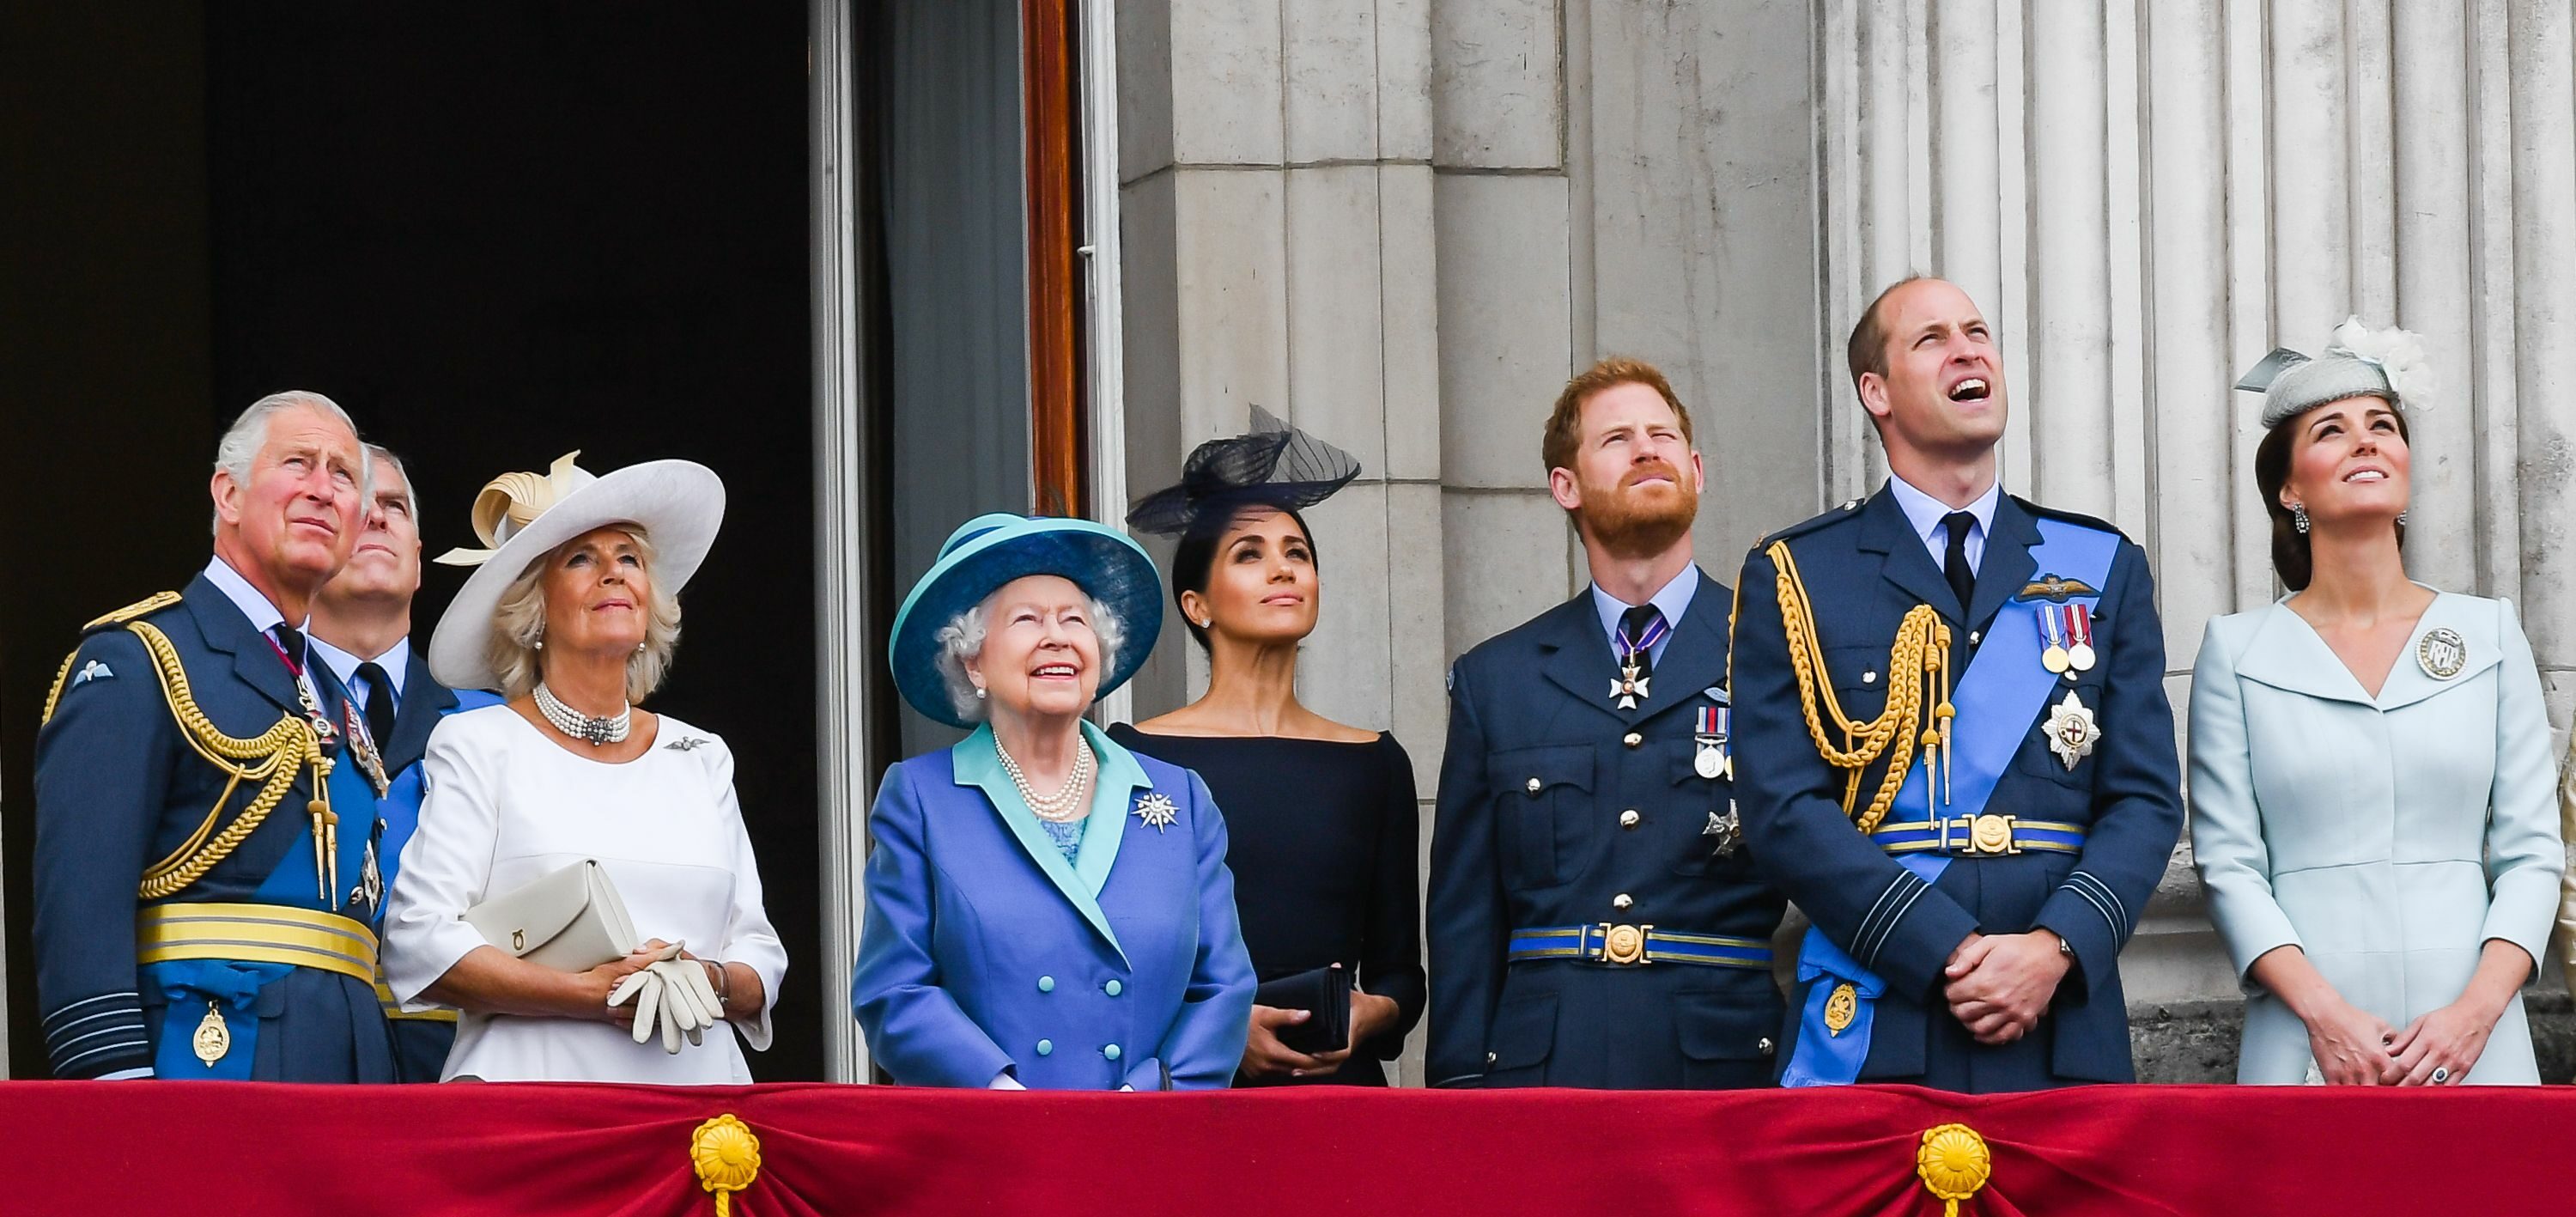 Bientôt un nouveau royal baby pour la famille royale d’Angleterre ?